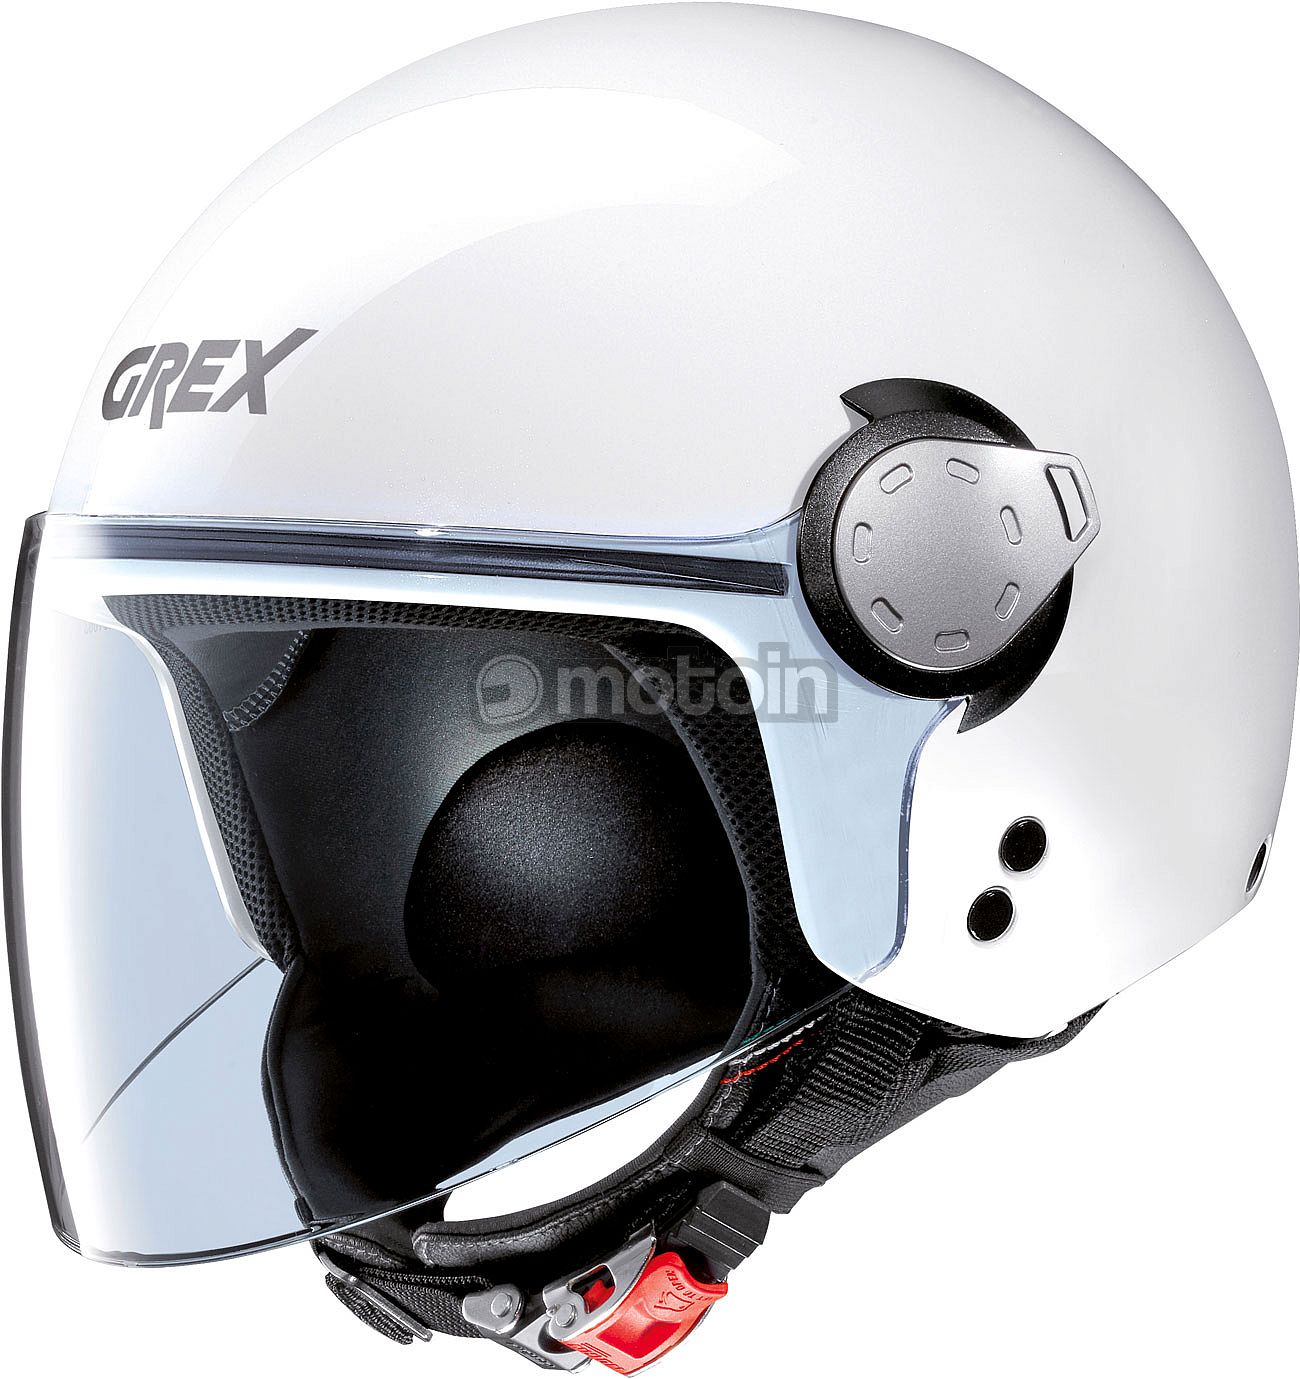 Grex G3.1 E Kinetic, jet helmet